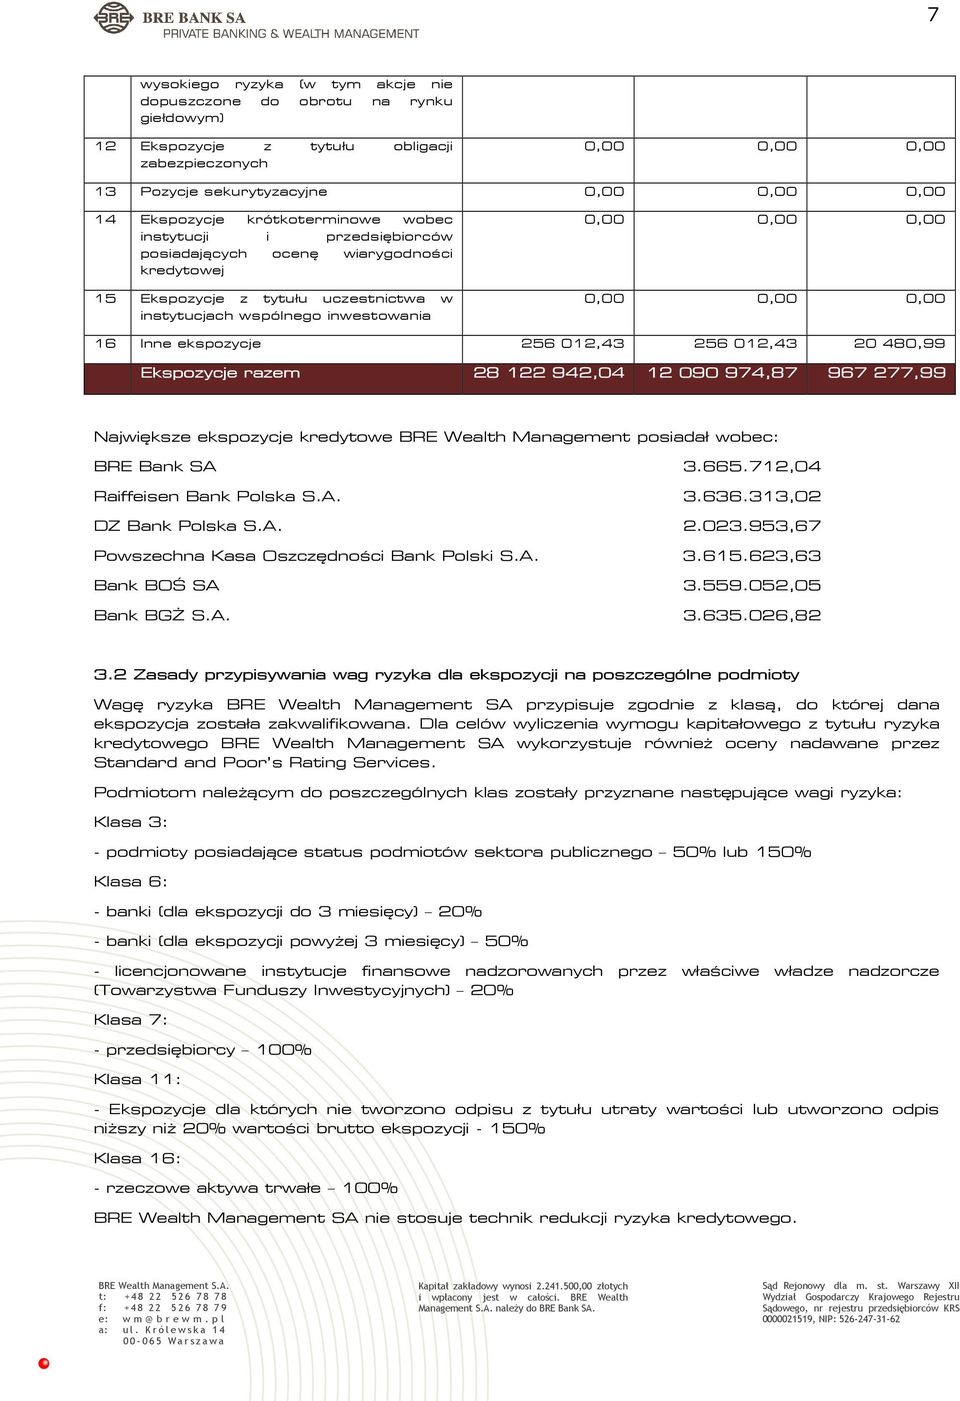 Ekspozycje razem 28 122 942,04 12 090 974,87 967 277,99 Największe ekspozycje kredytowe BRE Wealth Management posiadał wobec: BRE Bank SA 3.665.712,04 Raiffeisen Bank Polska S.A. 3.636.